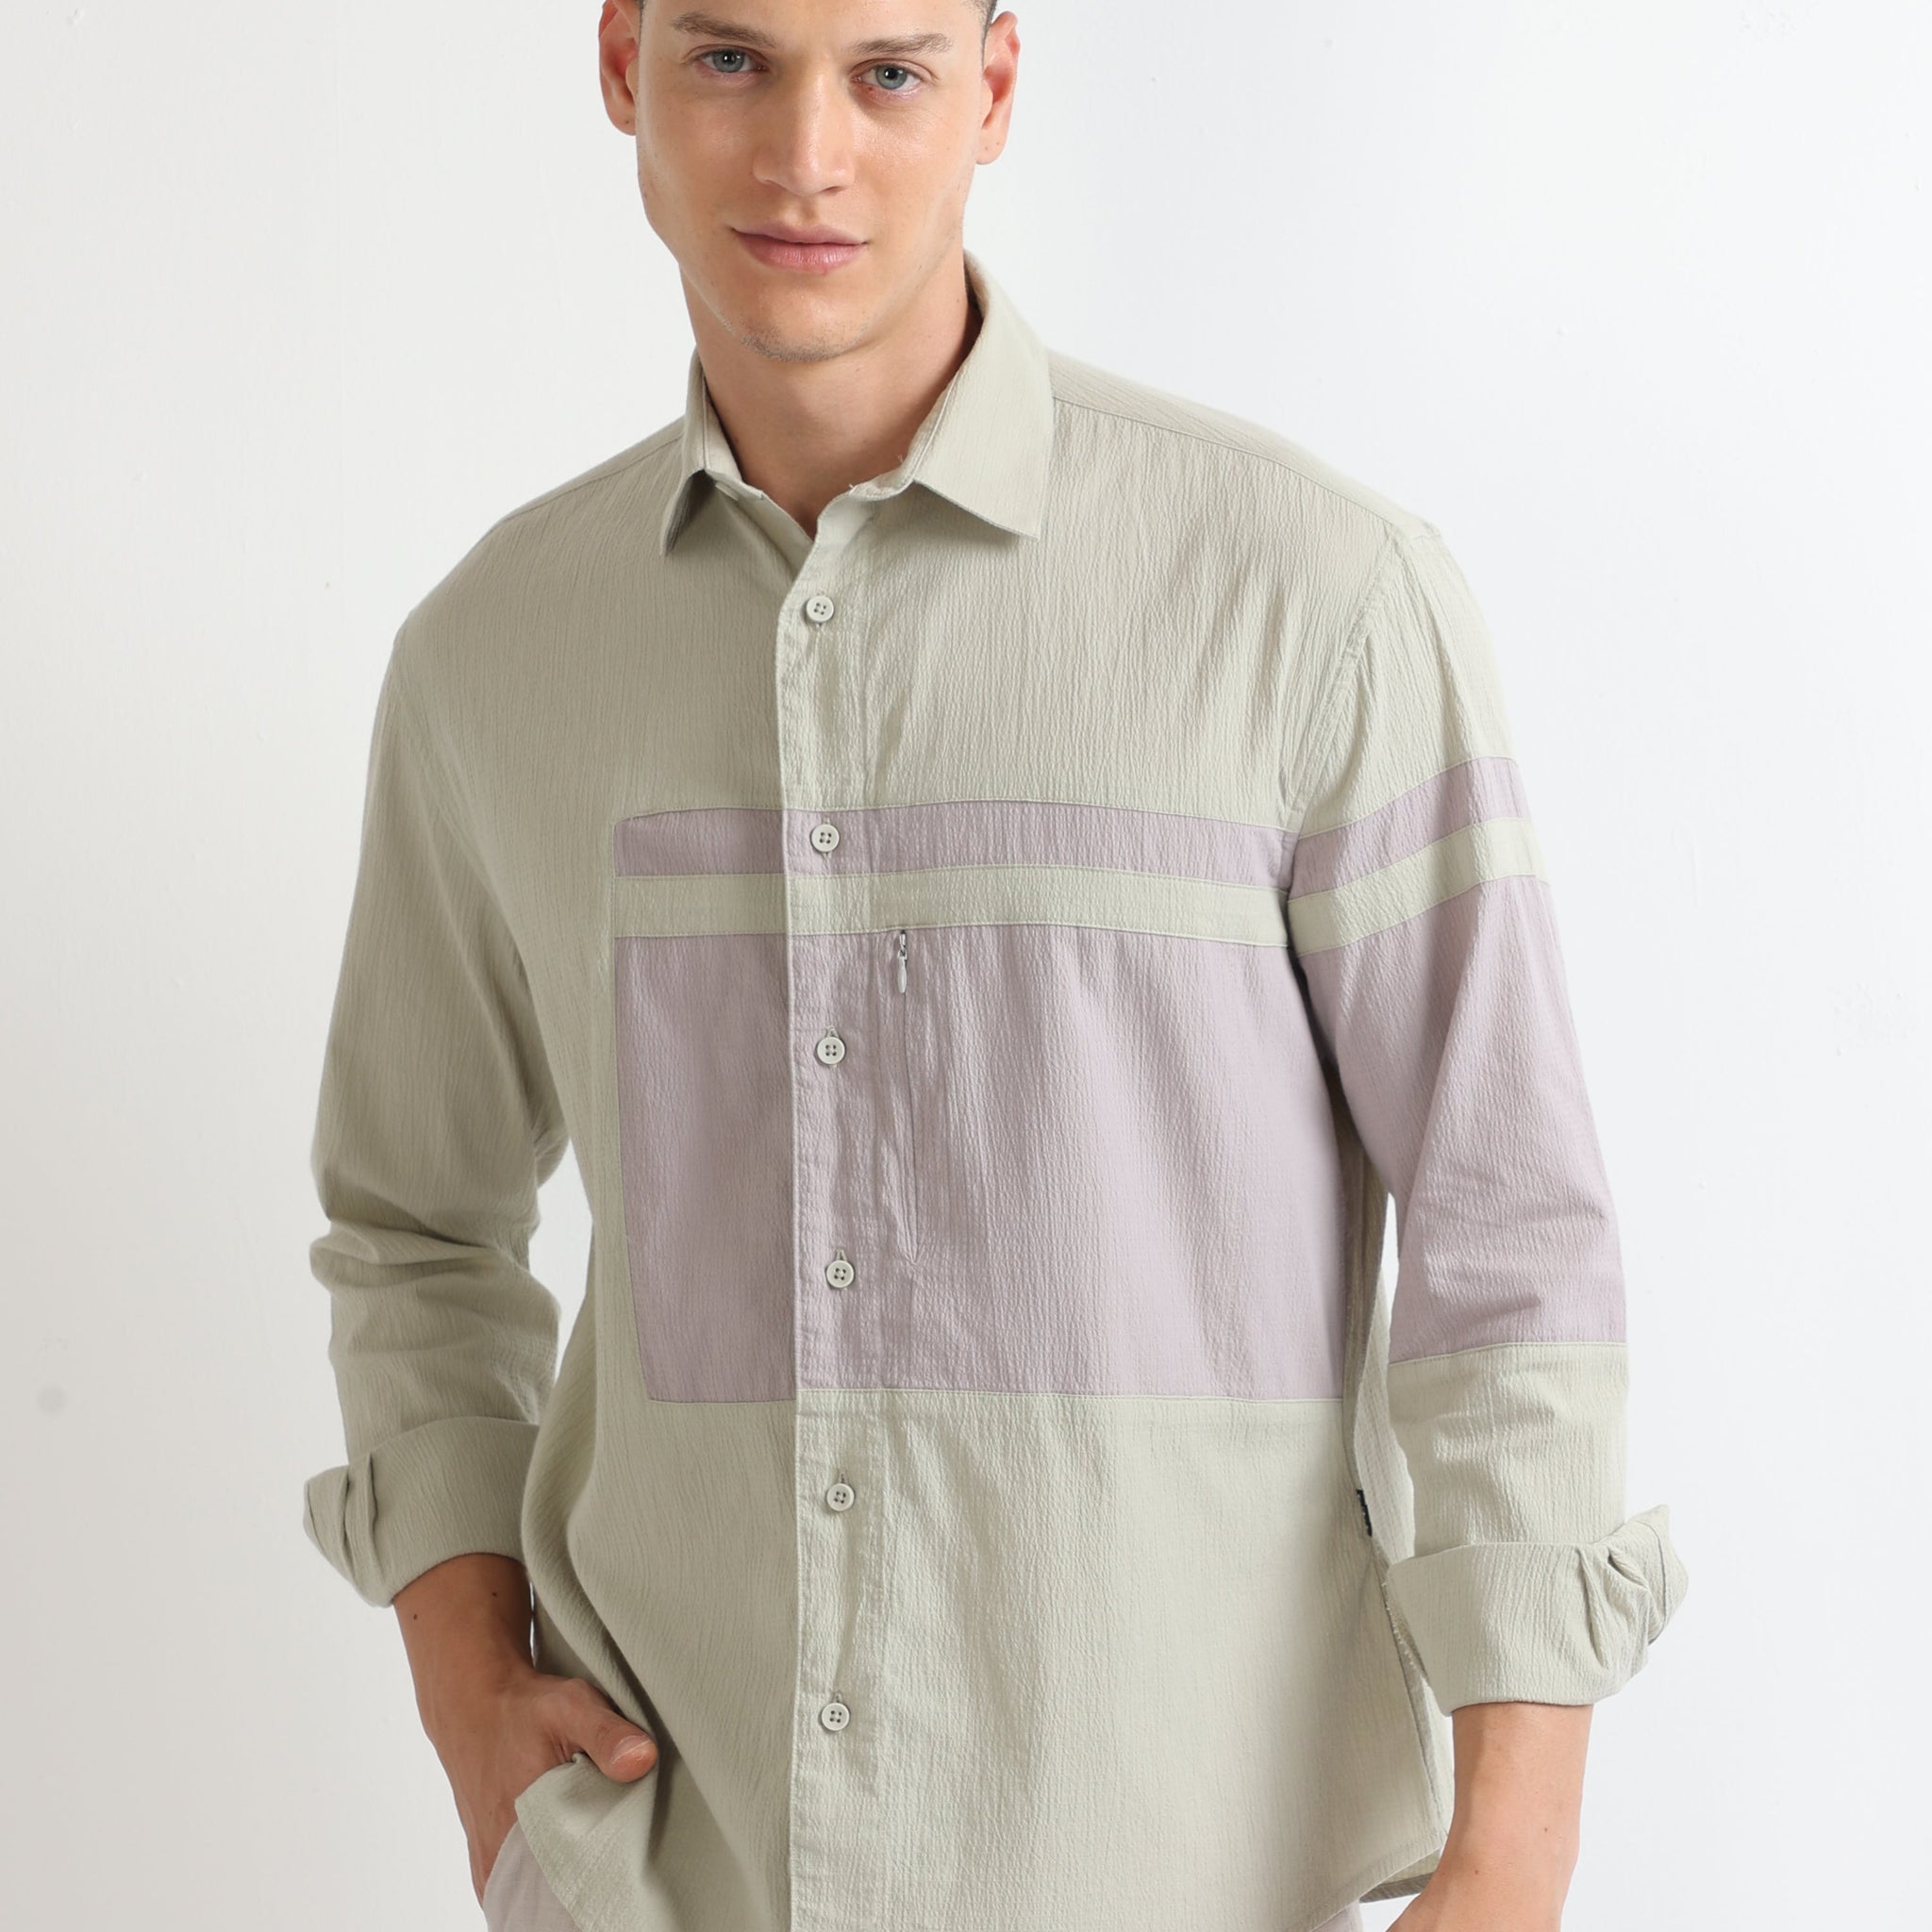 Buy Crushed Panel Stylish Shirt Online